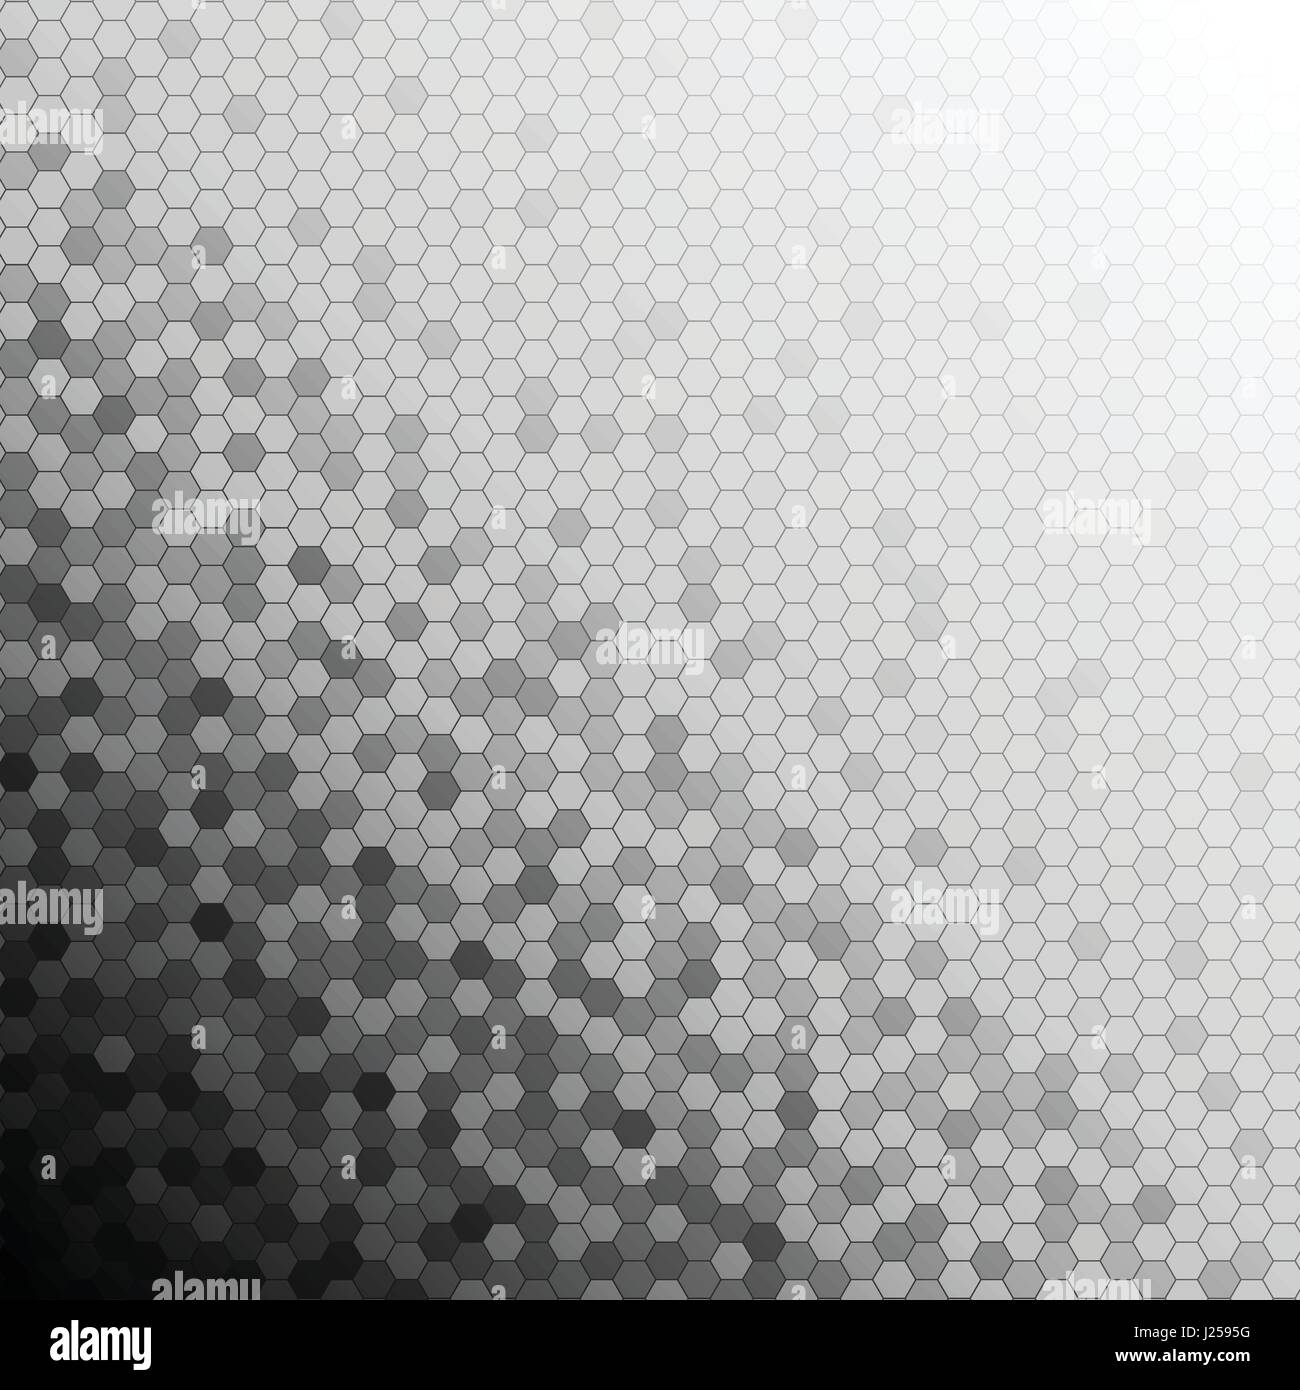 Schatten des schwarzen Sechseck-Muster Designkonzept abstrakten Hintergrund Stock Vektor